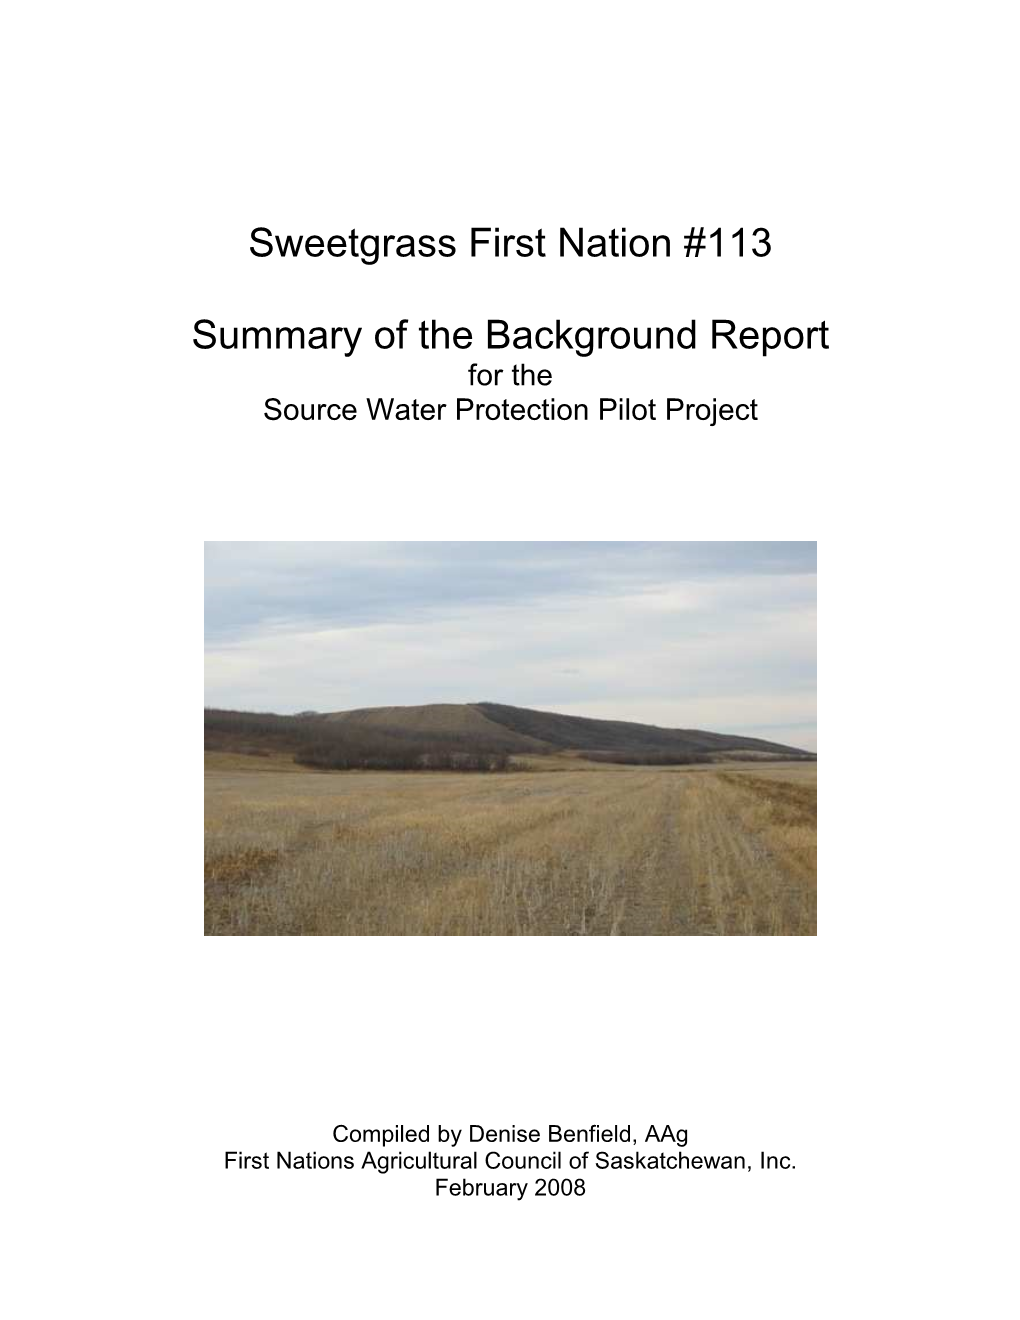 Sweetgrass Background Summary